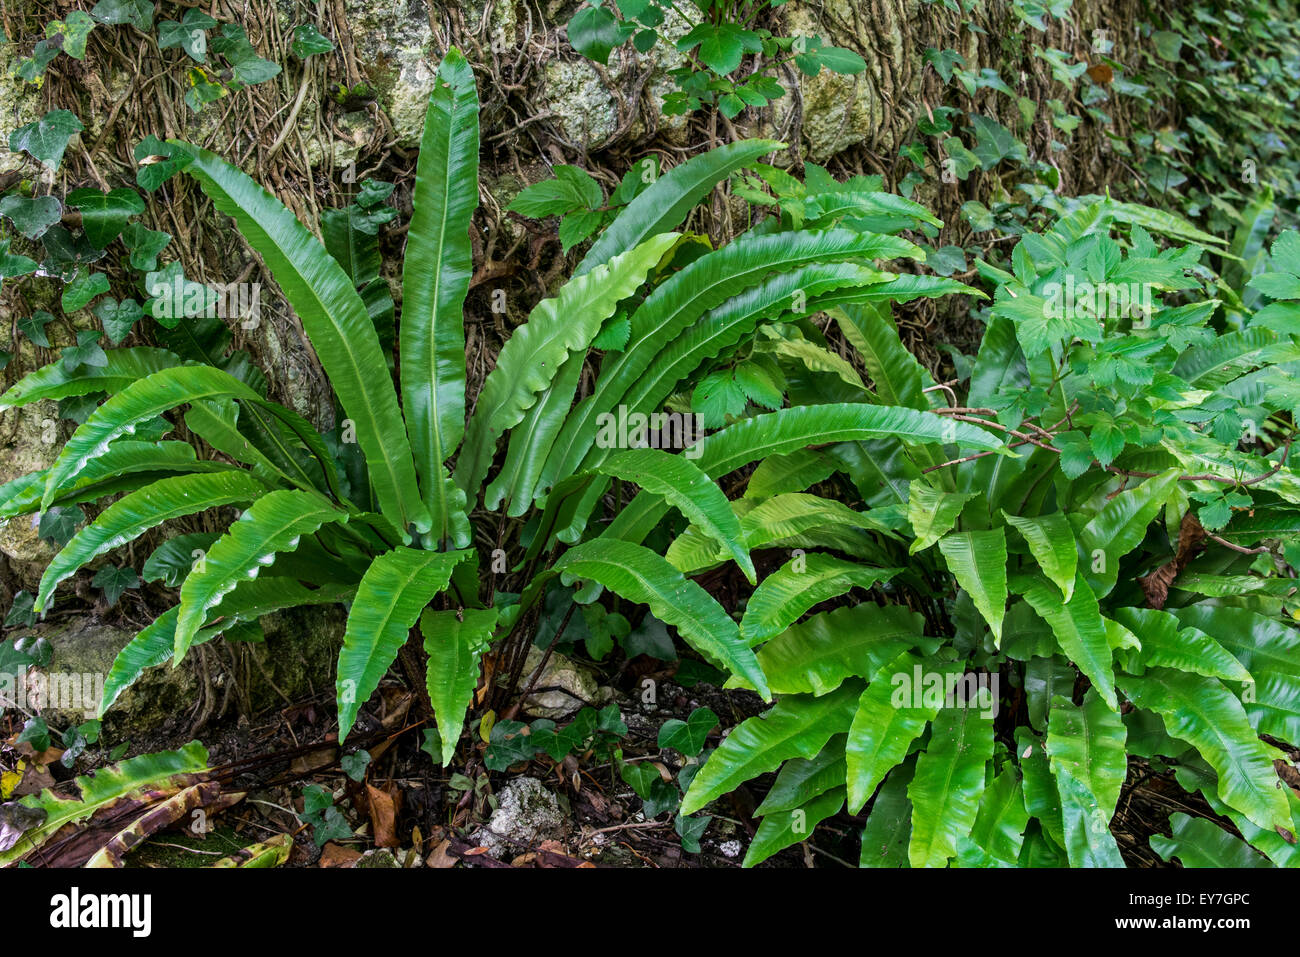 Hart's-tongue fern (Asplenium scolopendrium / Phyllitis scolopendrium) in forest Stock Photo